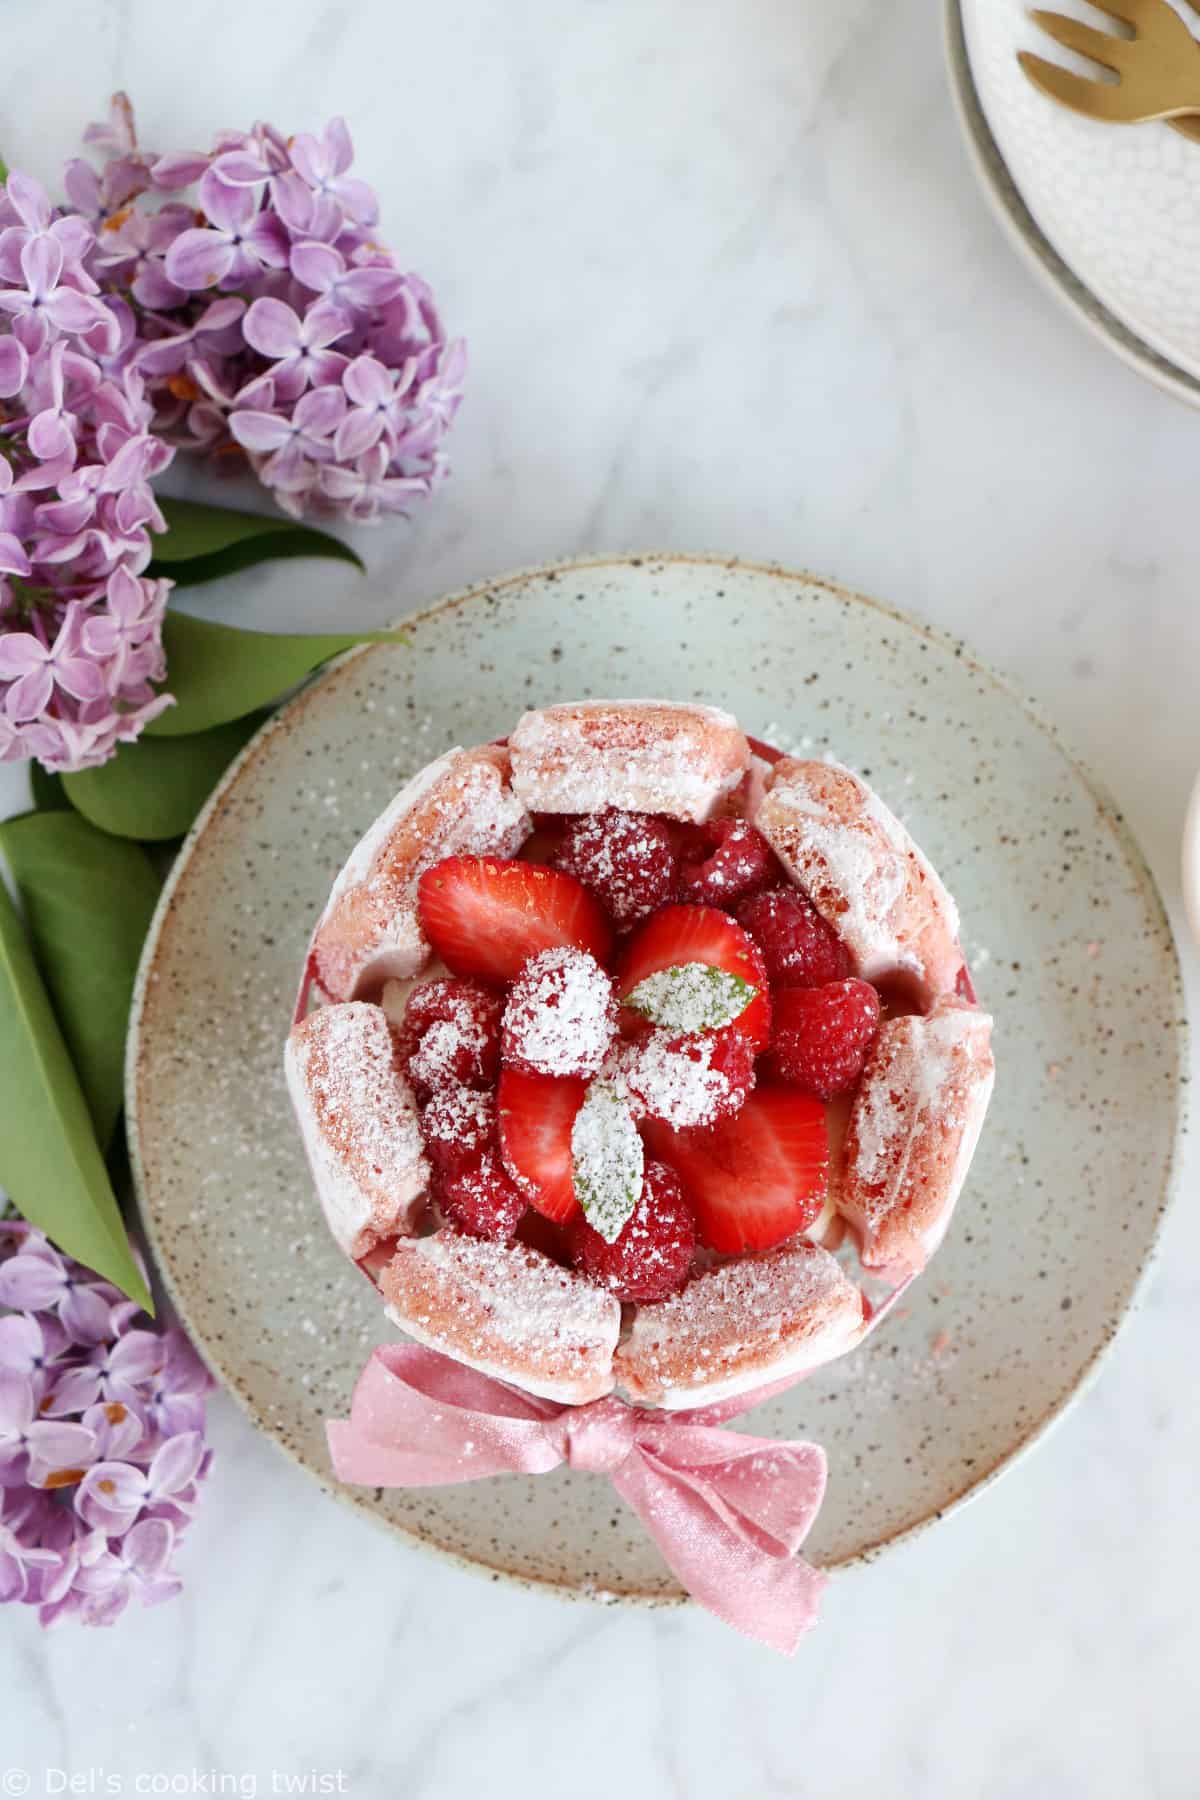 Charlotte aux fraises aux biscuits roses de Reims et mousse au chocolat blanc